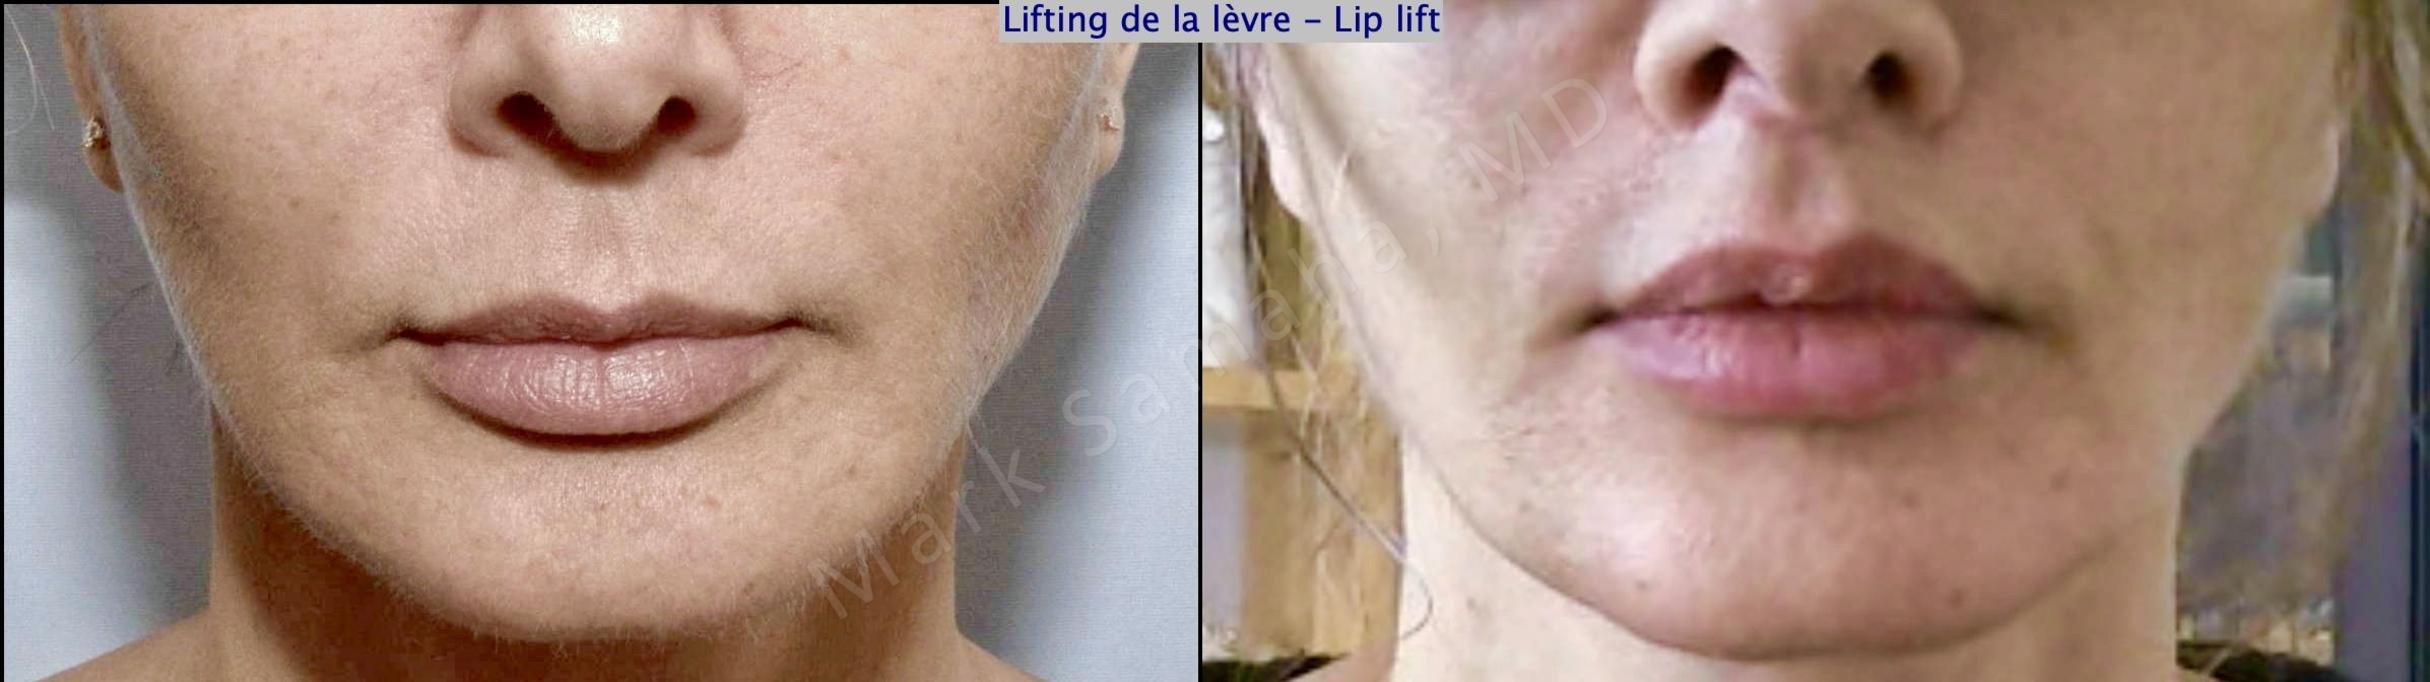 Before & After Lifting de la lèvre supérieure / Lip Lift  Case 178 Front View in Mount Royal, QC